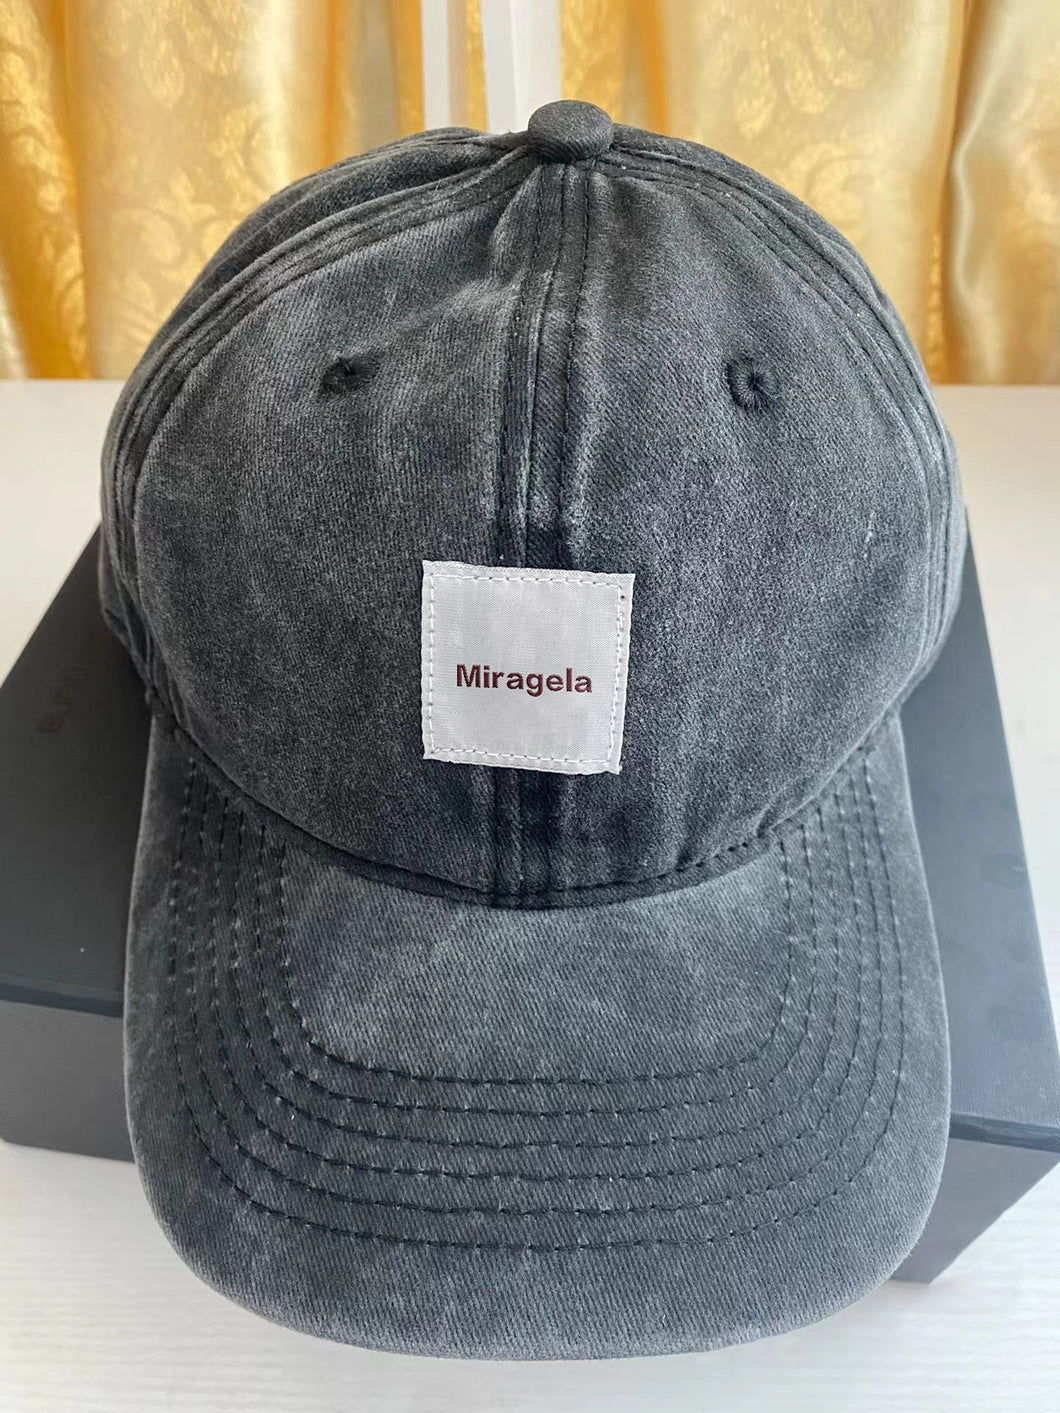 Miragela Hats,men's women's breathable quick dry adjustable hats